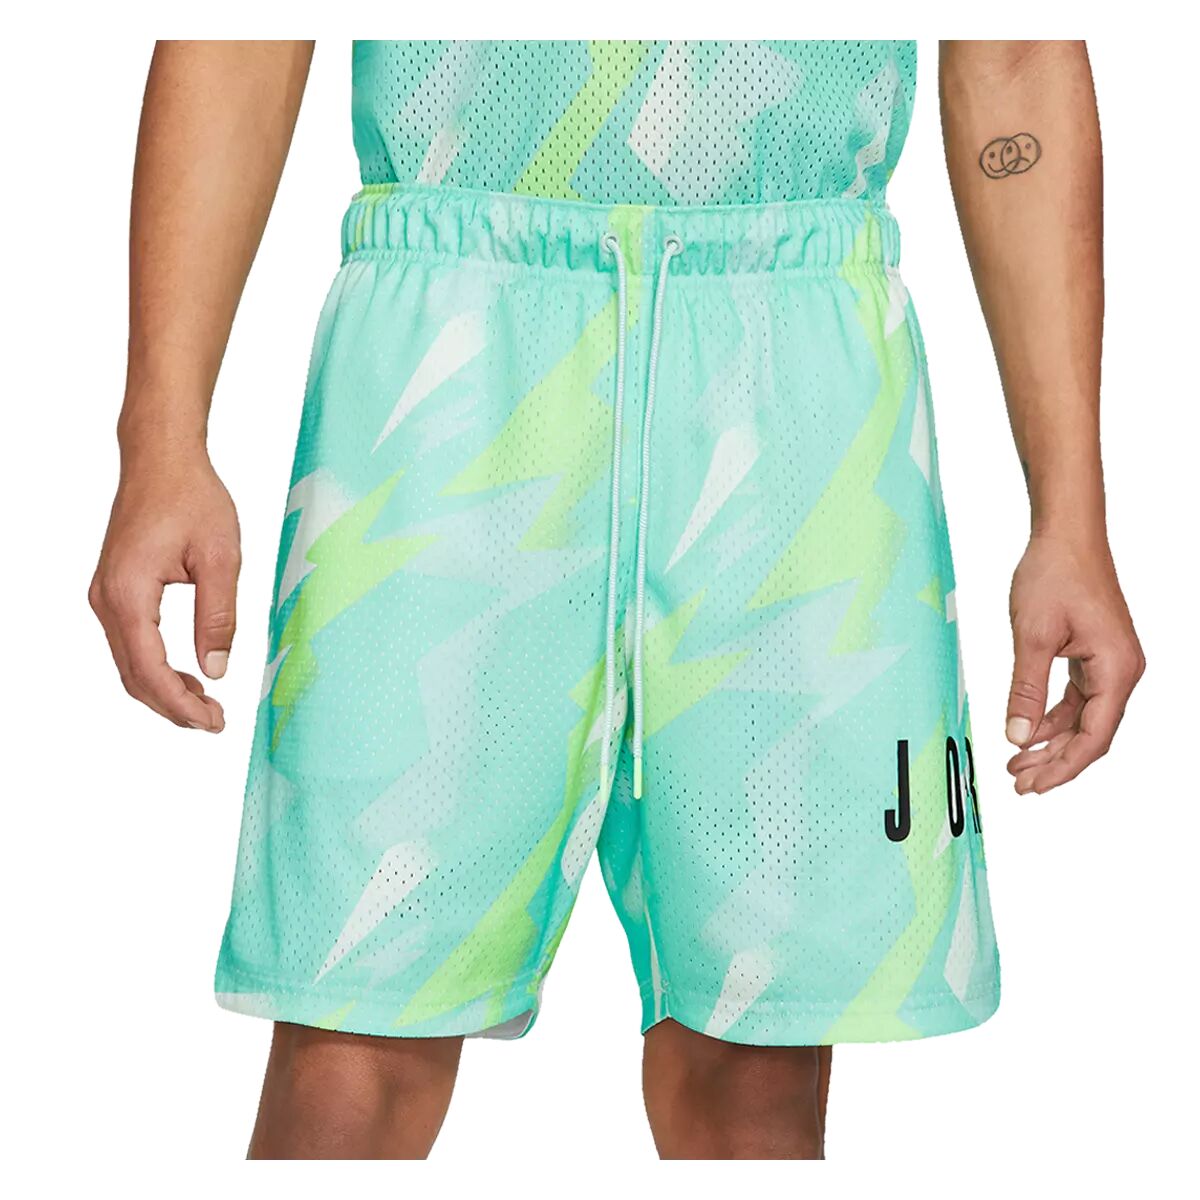 Nike Short Nike Jordan Jumpman Air AOP turquoise/blanc  - turquoise - Size: M - male